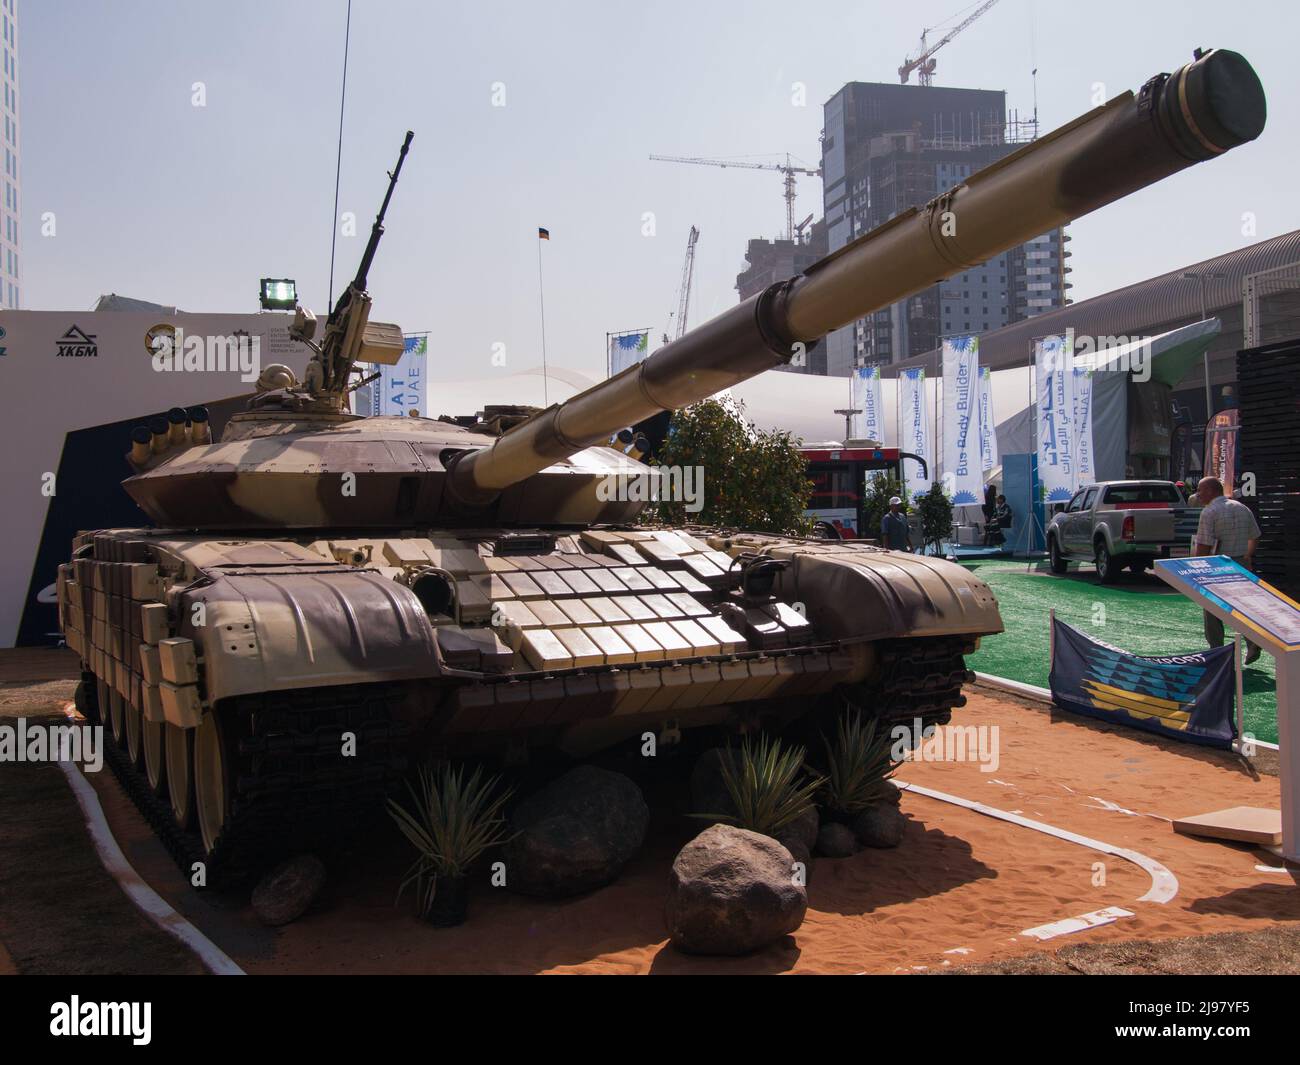 Abu Dhabi, VAE - 23. Februar. 2011: Ukrainische Armee T-72B auf der IDEX 2011 Militärausstellung Stockfoto